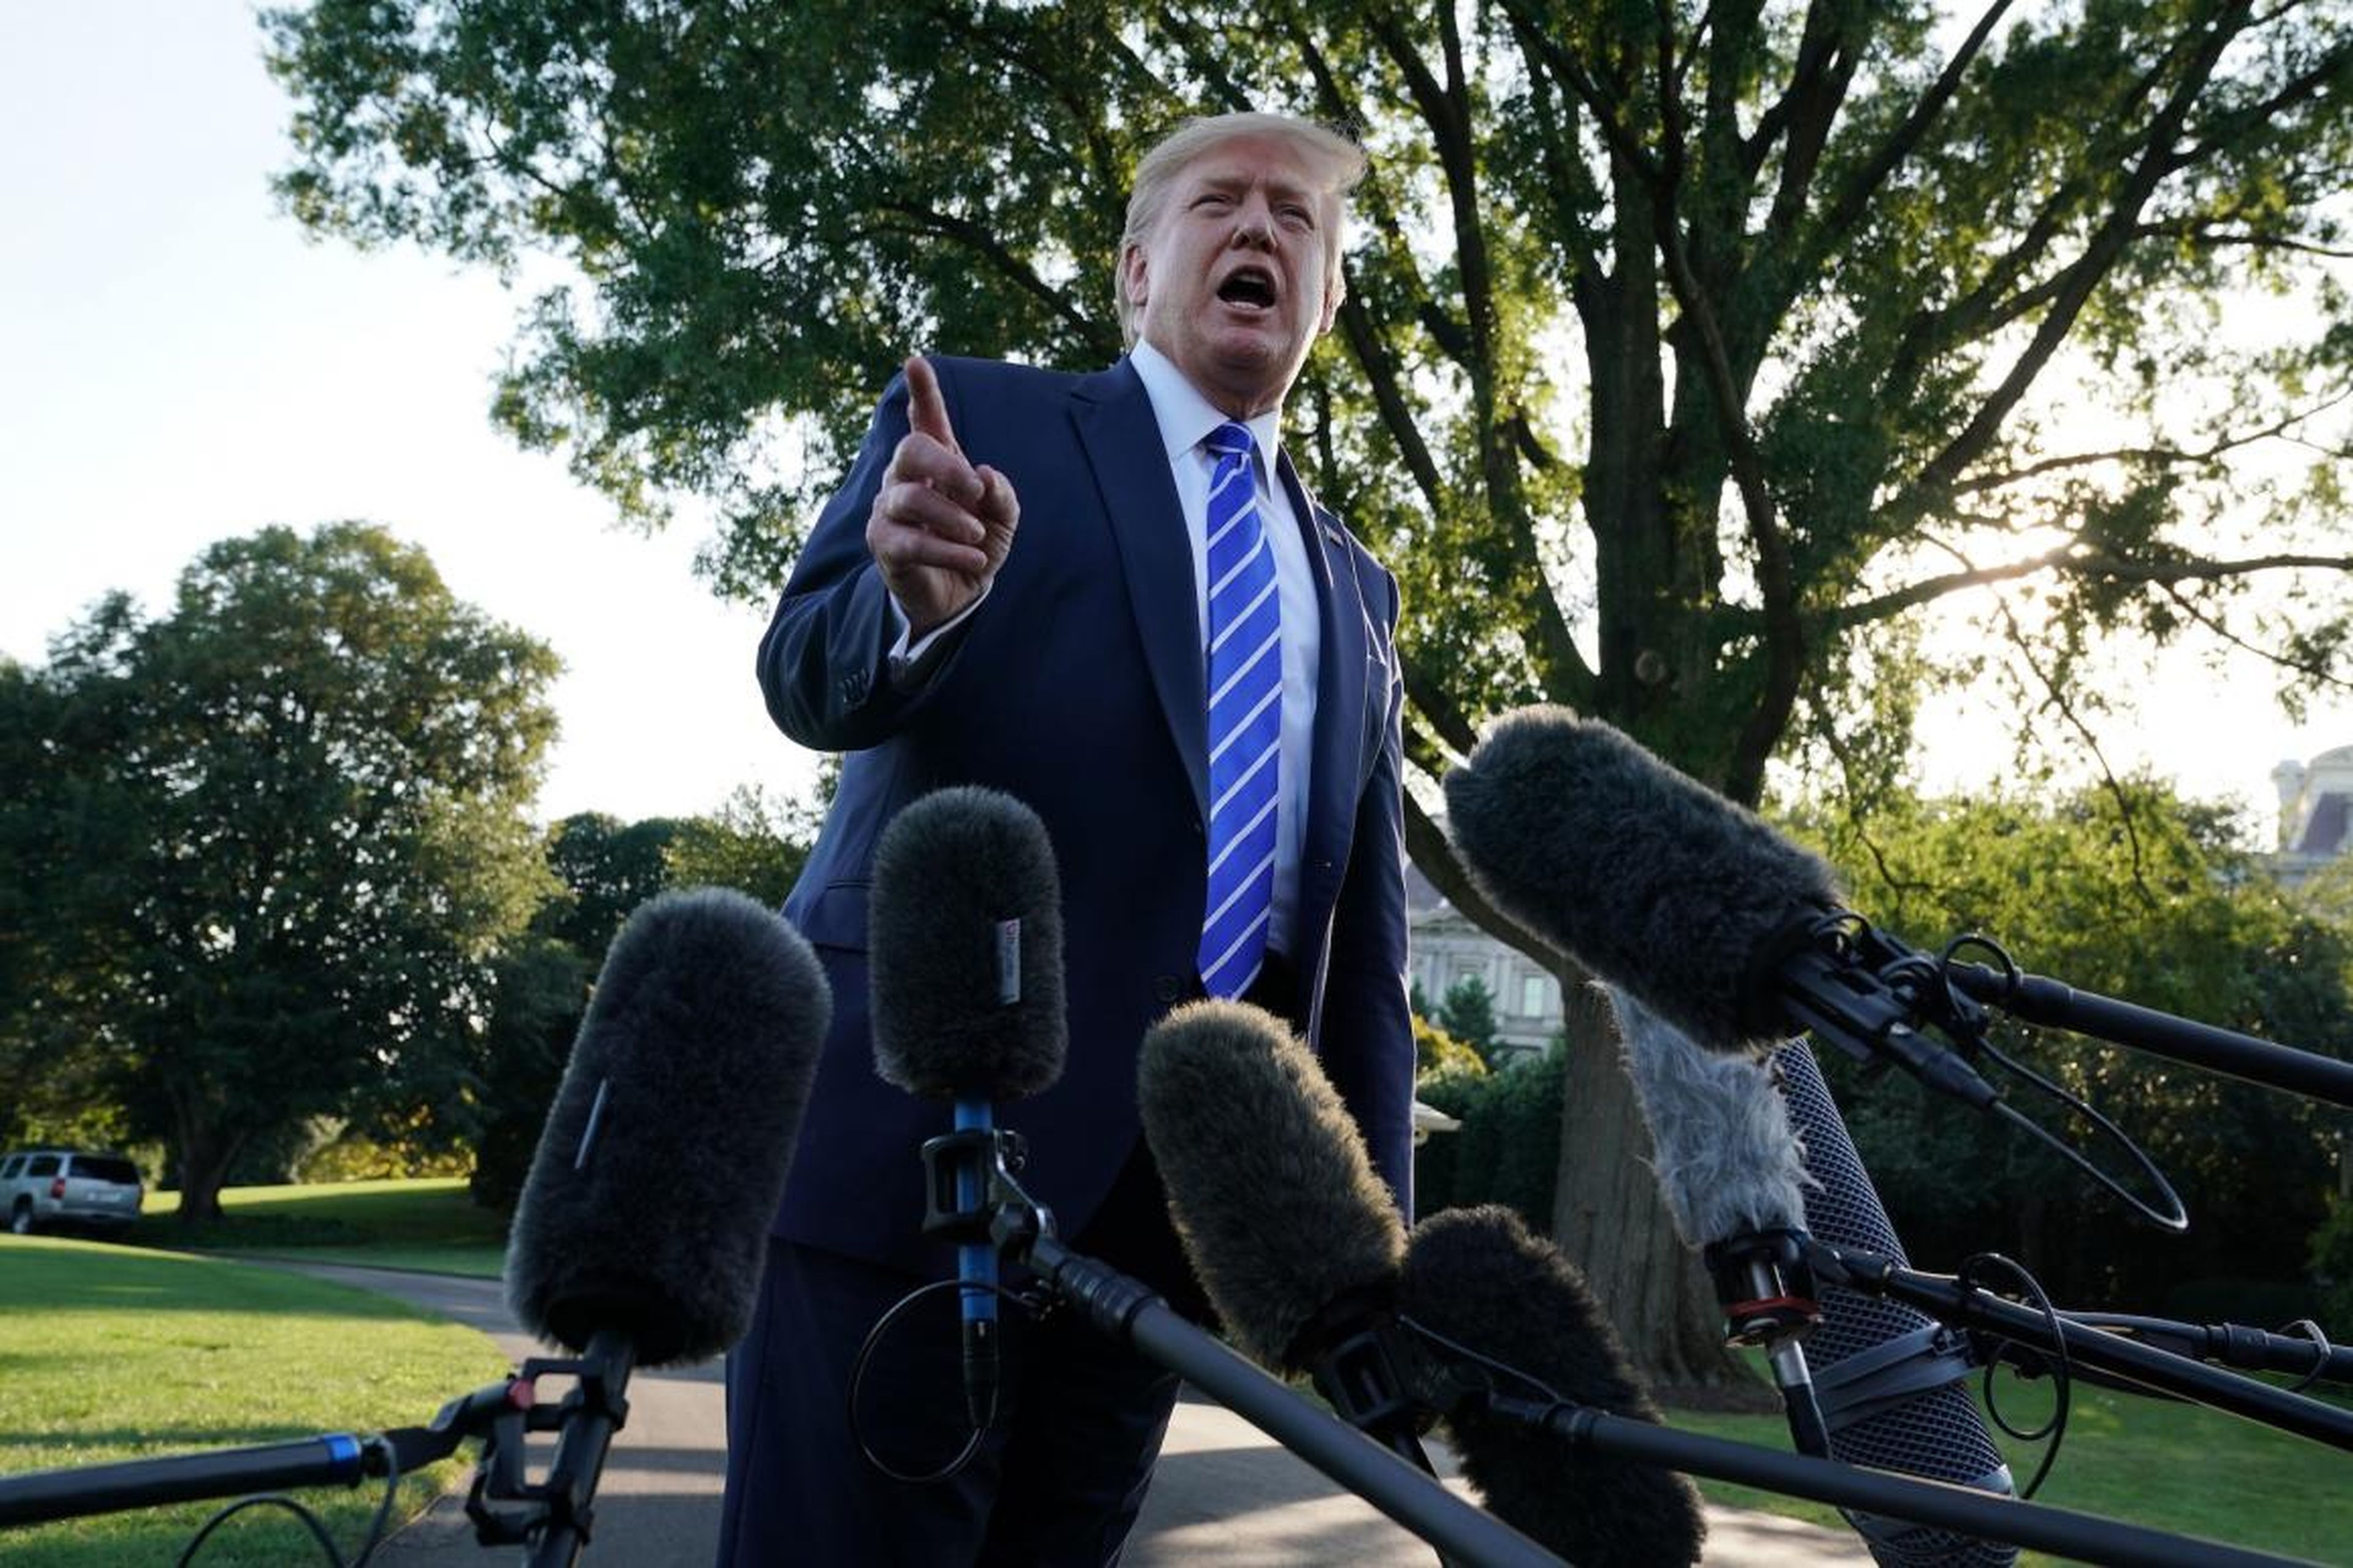 El presidente de Estados Unidos, Donald Trump, habla con miembros de los medios de comunicación antes de su partida para Camp David el 30 de agosto de 2019 en la Casa Blanca en Washington, DC.